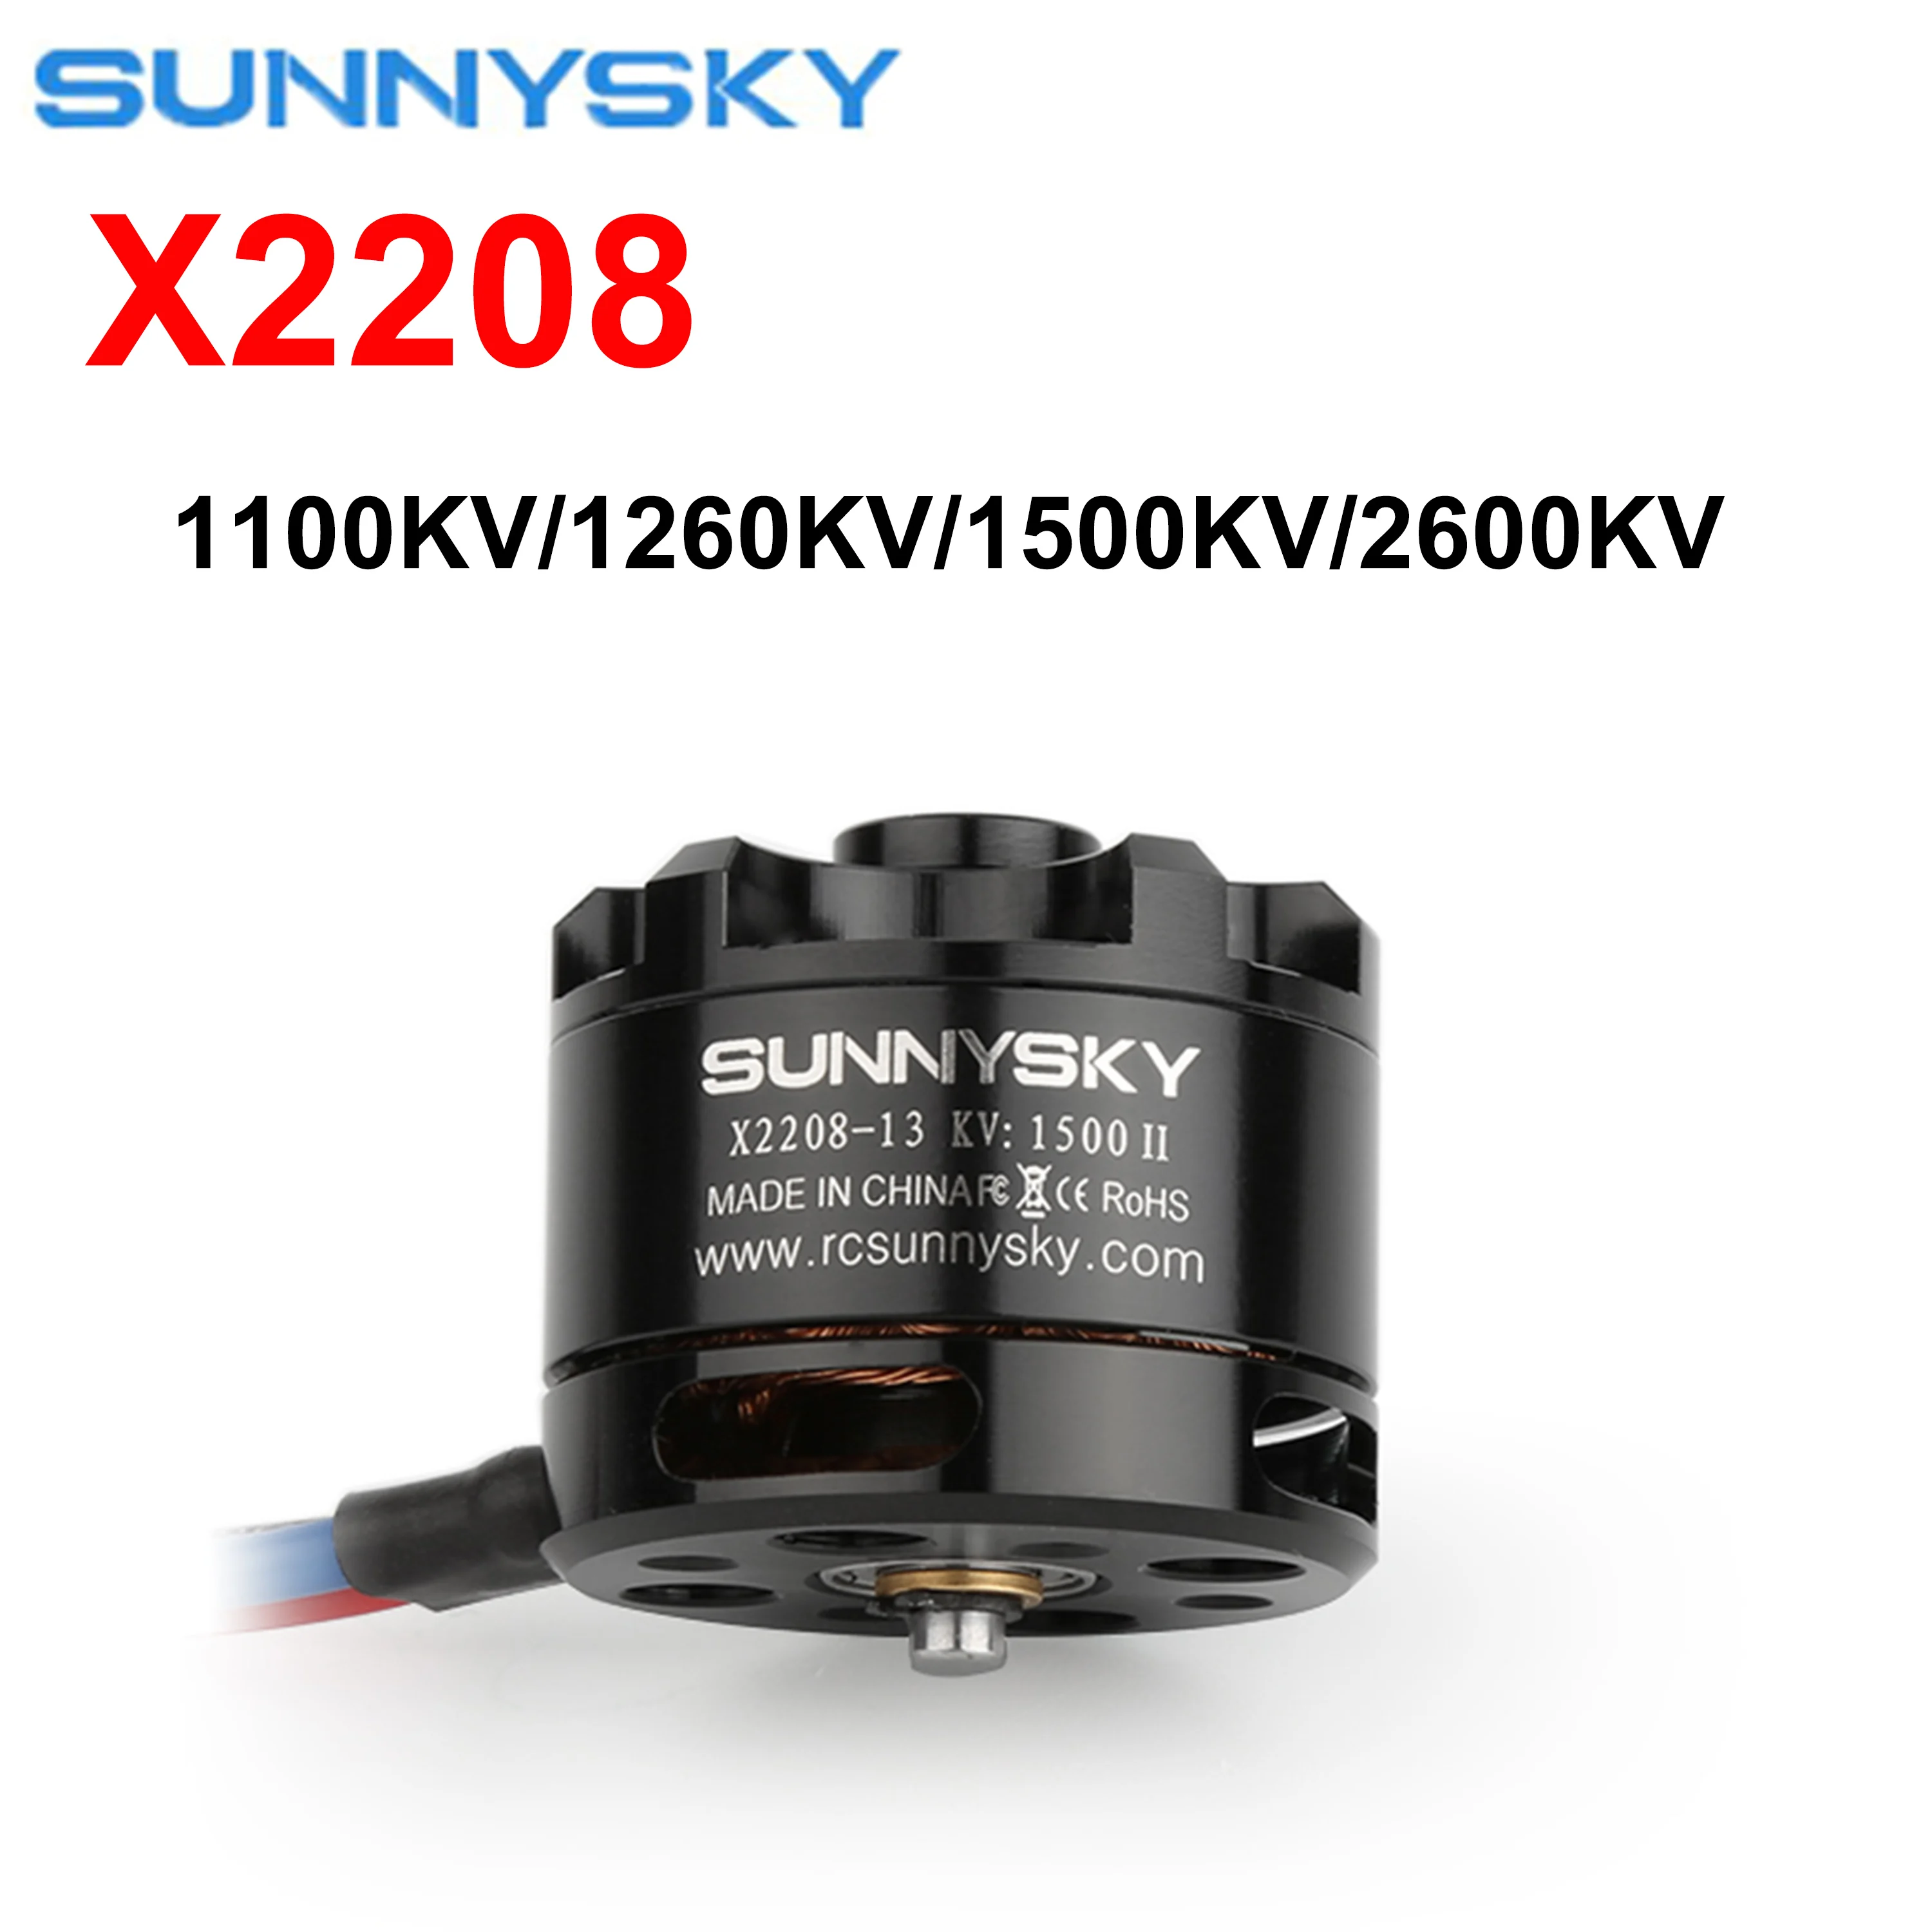 

SUNNYSKY X2208 бесщеточный двигатель 1100KV 1260KV 1500KV 2600KV для фотоквадрокоптера, 3D дрона с фиксированным крылом